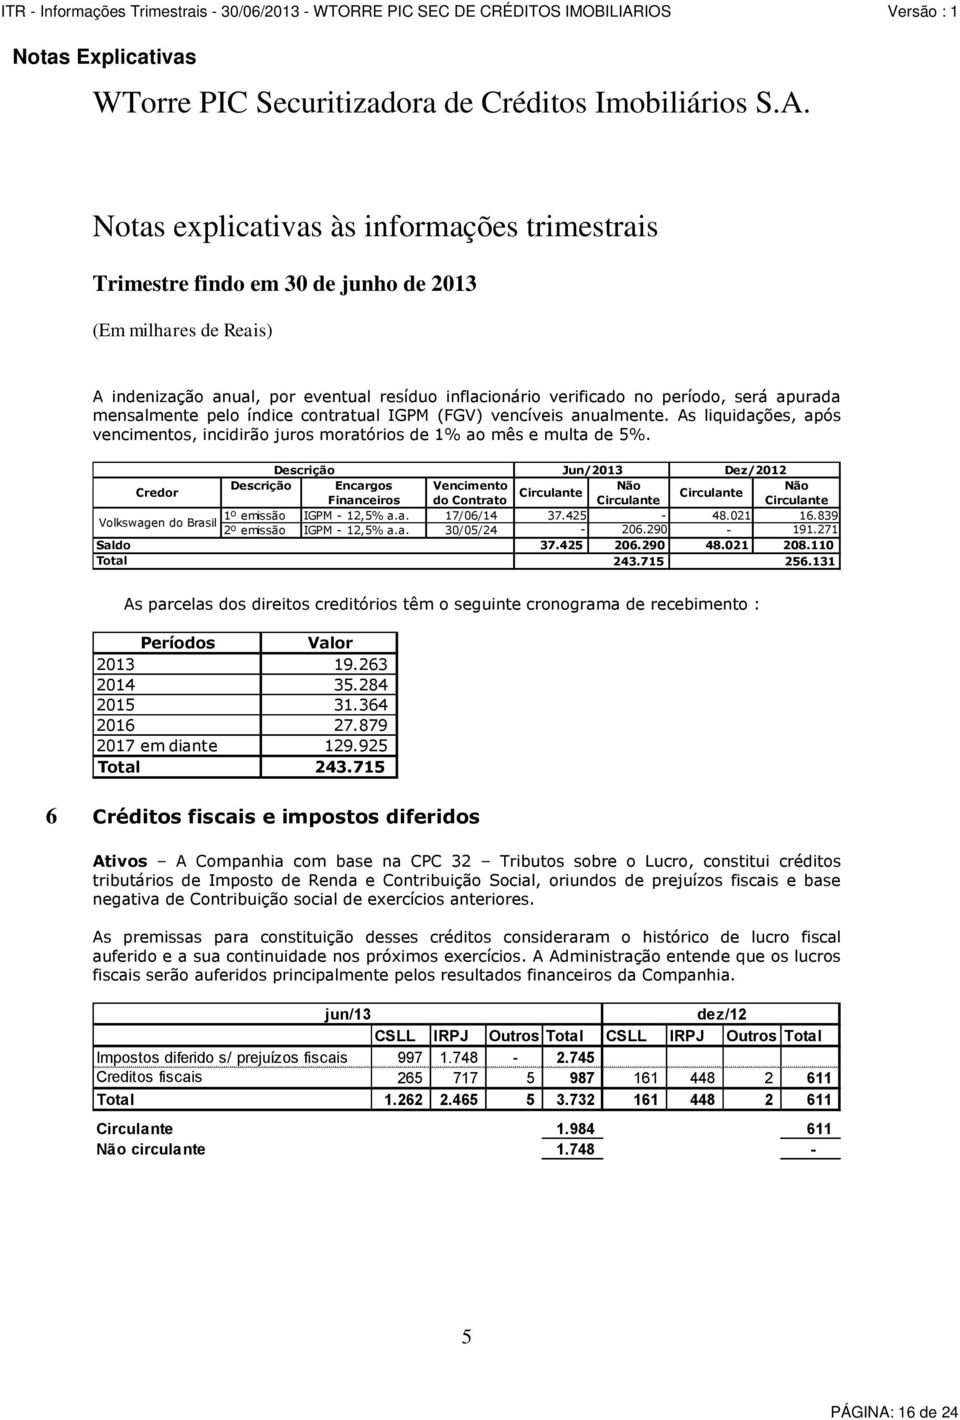 Descrição Jun/2013 Dez/2012 Credor Descrição Encargos Vencimento Não Não Circulante Circulante Financeiros do Contrato Circulante Circulante 1º emissão IGPM - 12,5% a.a. 17/06/14 37.425-48.021 16.